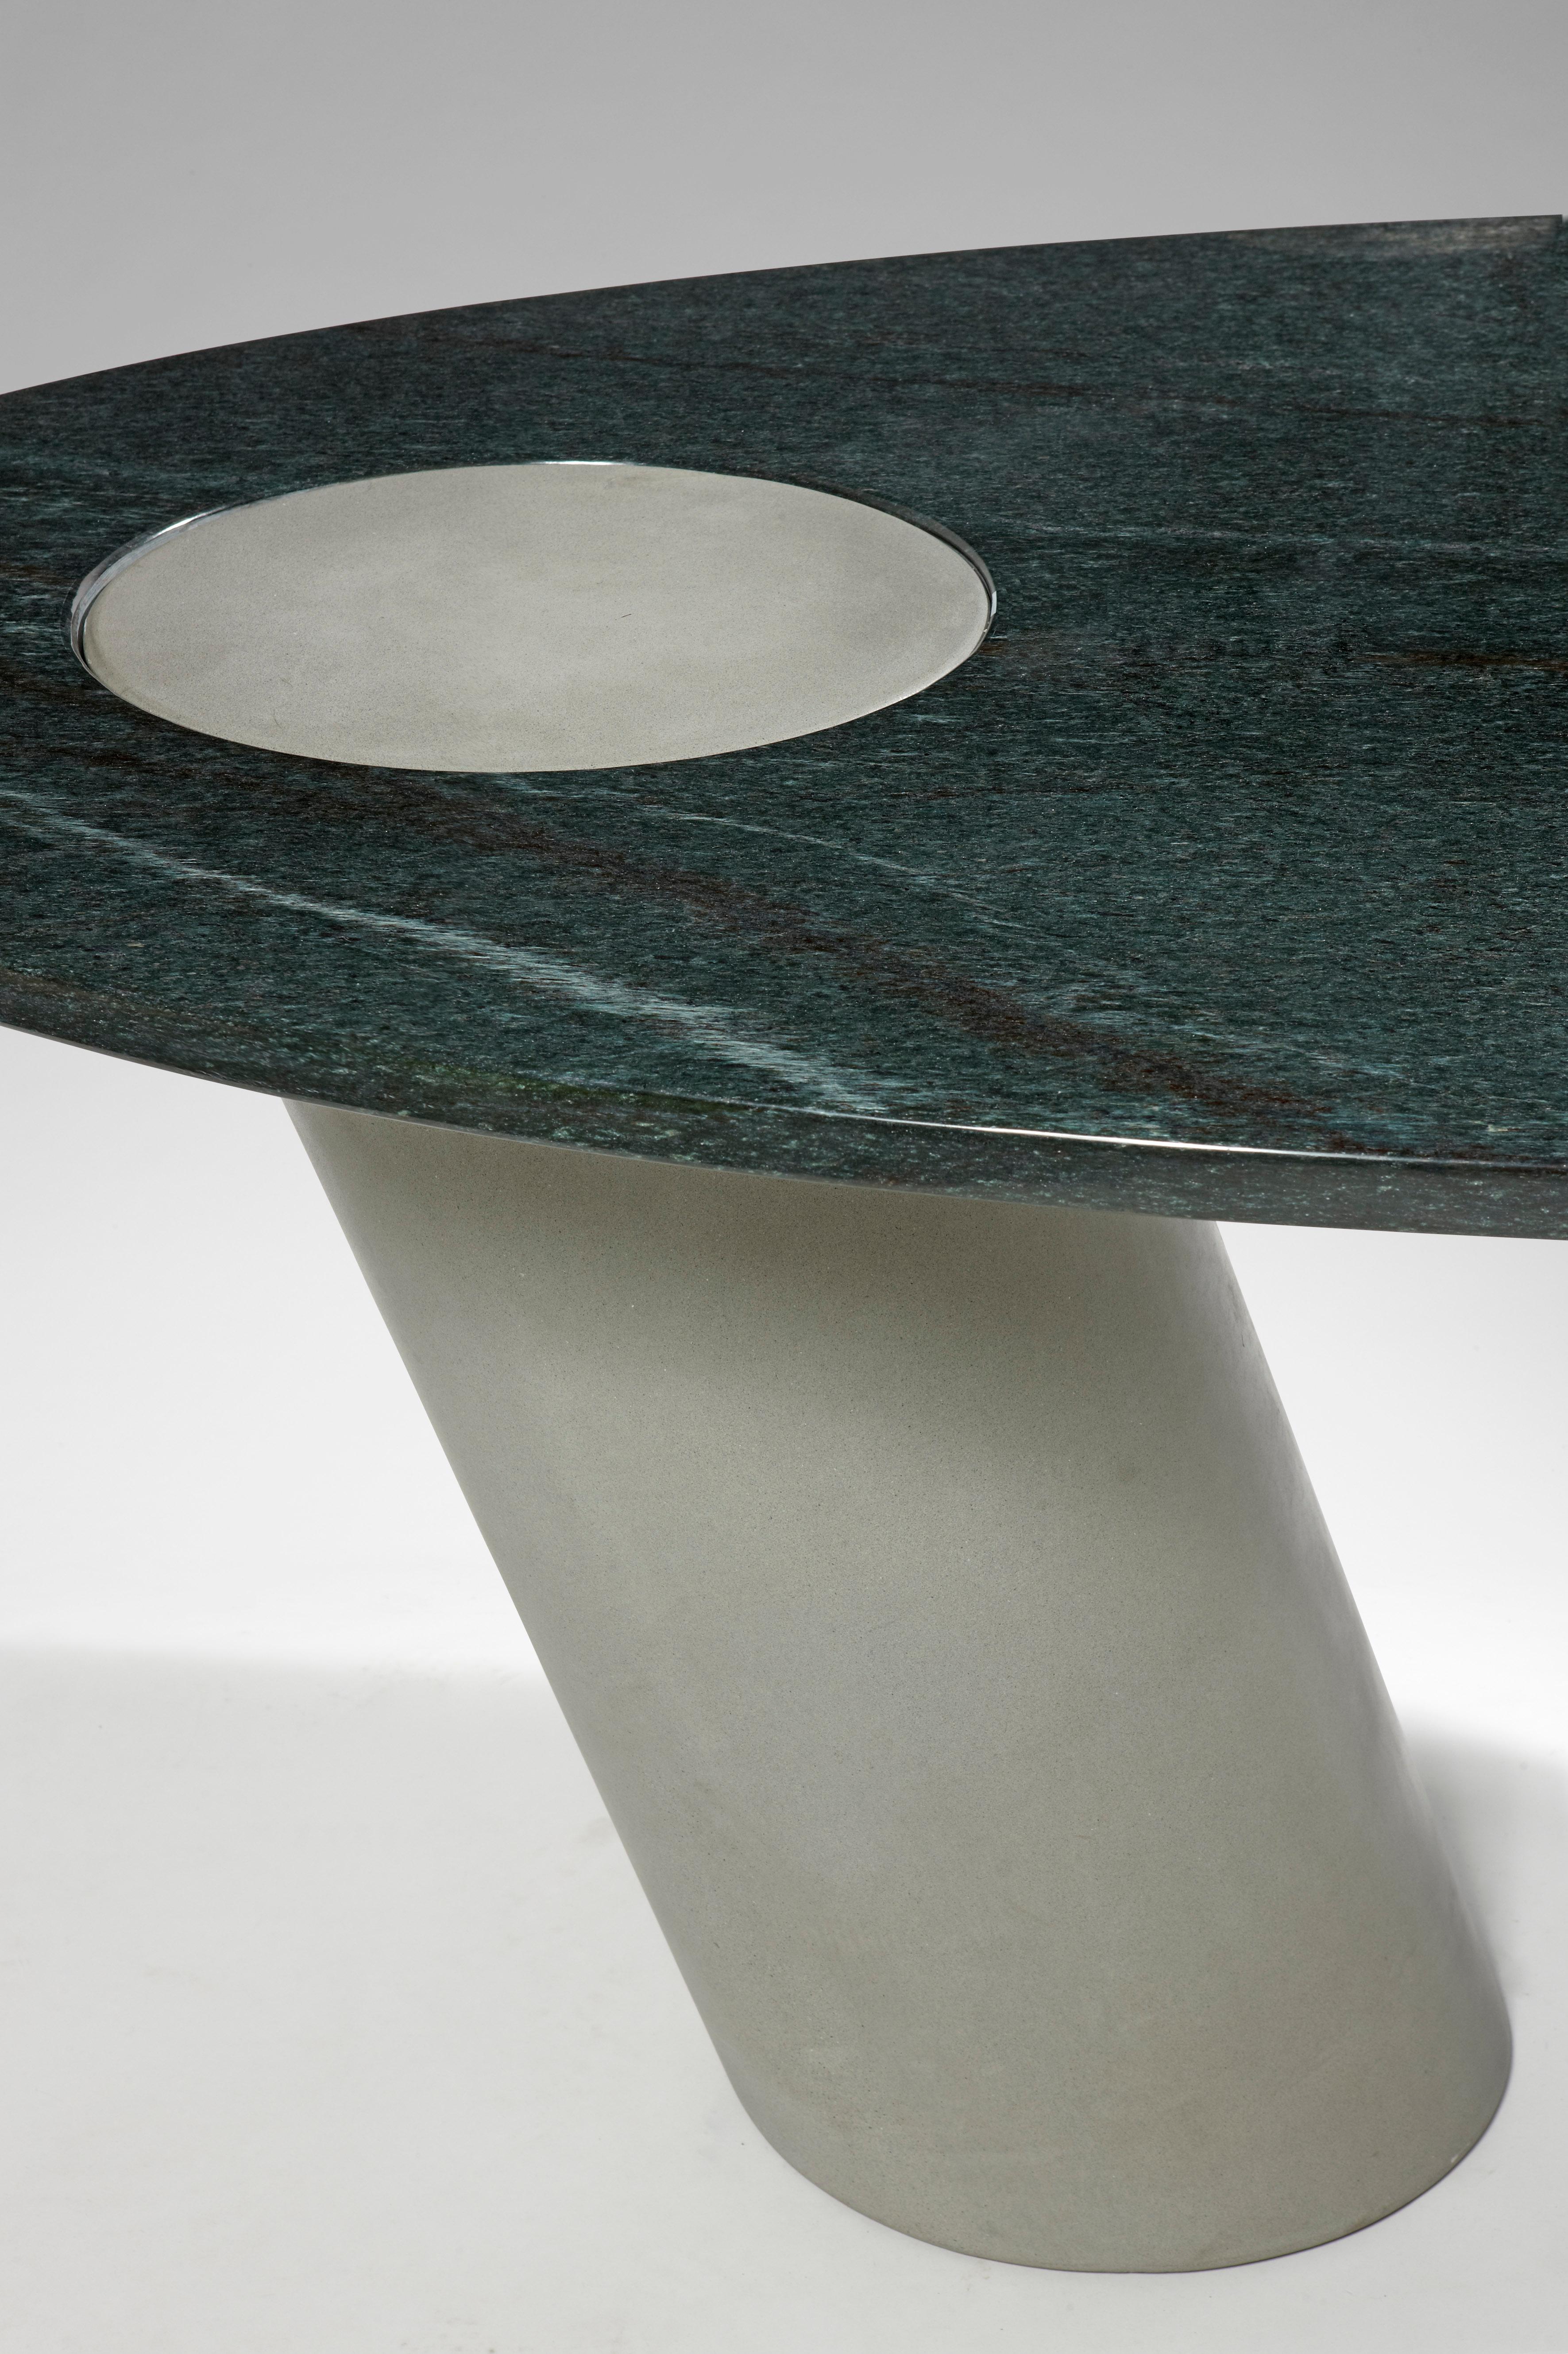 Une spectaculaire table en porte-à-faux avec articulation par gravité réalisée par le célèbre architecte Angelo Mangiarotti. 
Un mélange élégant de minimalisme et de textures de pierre.